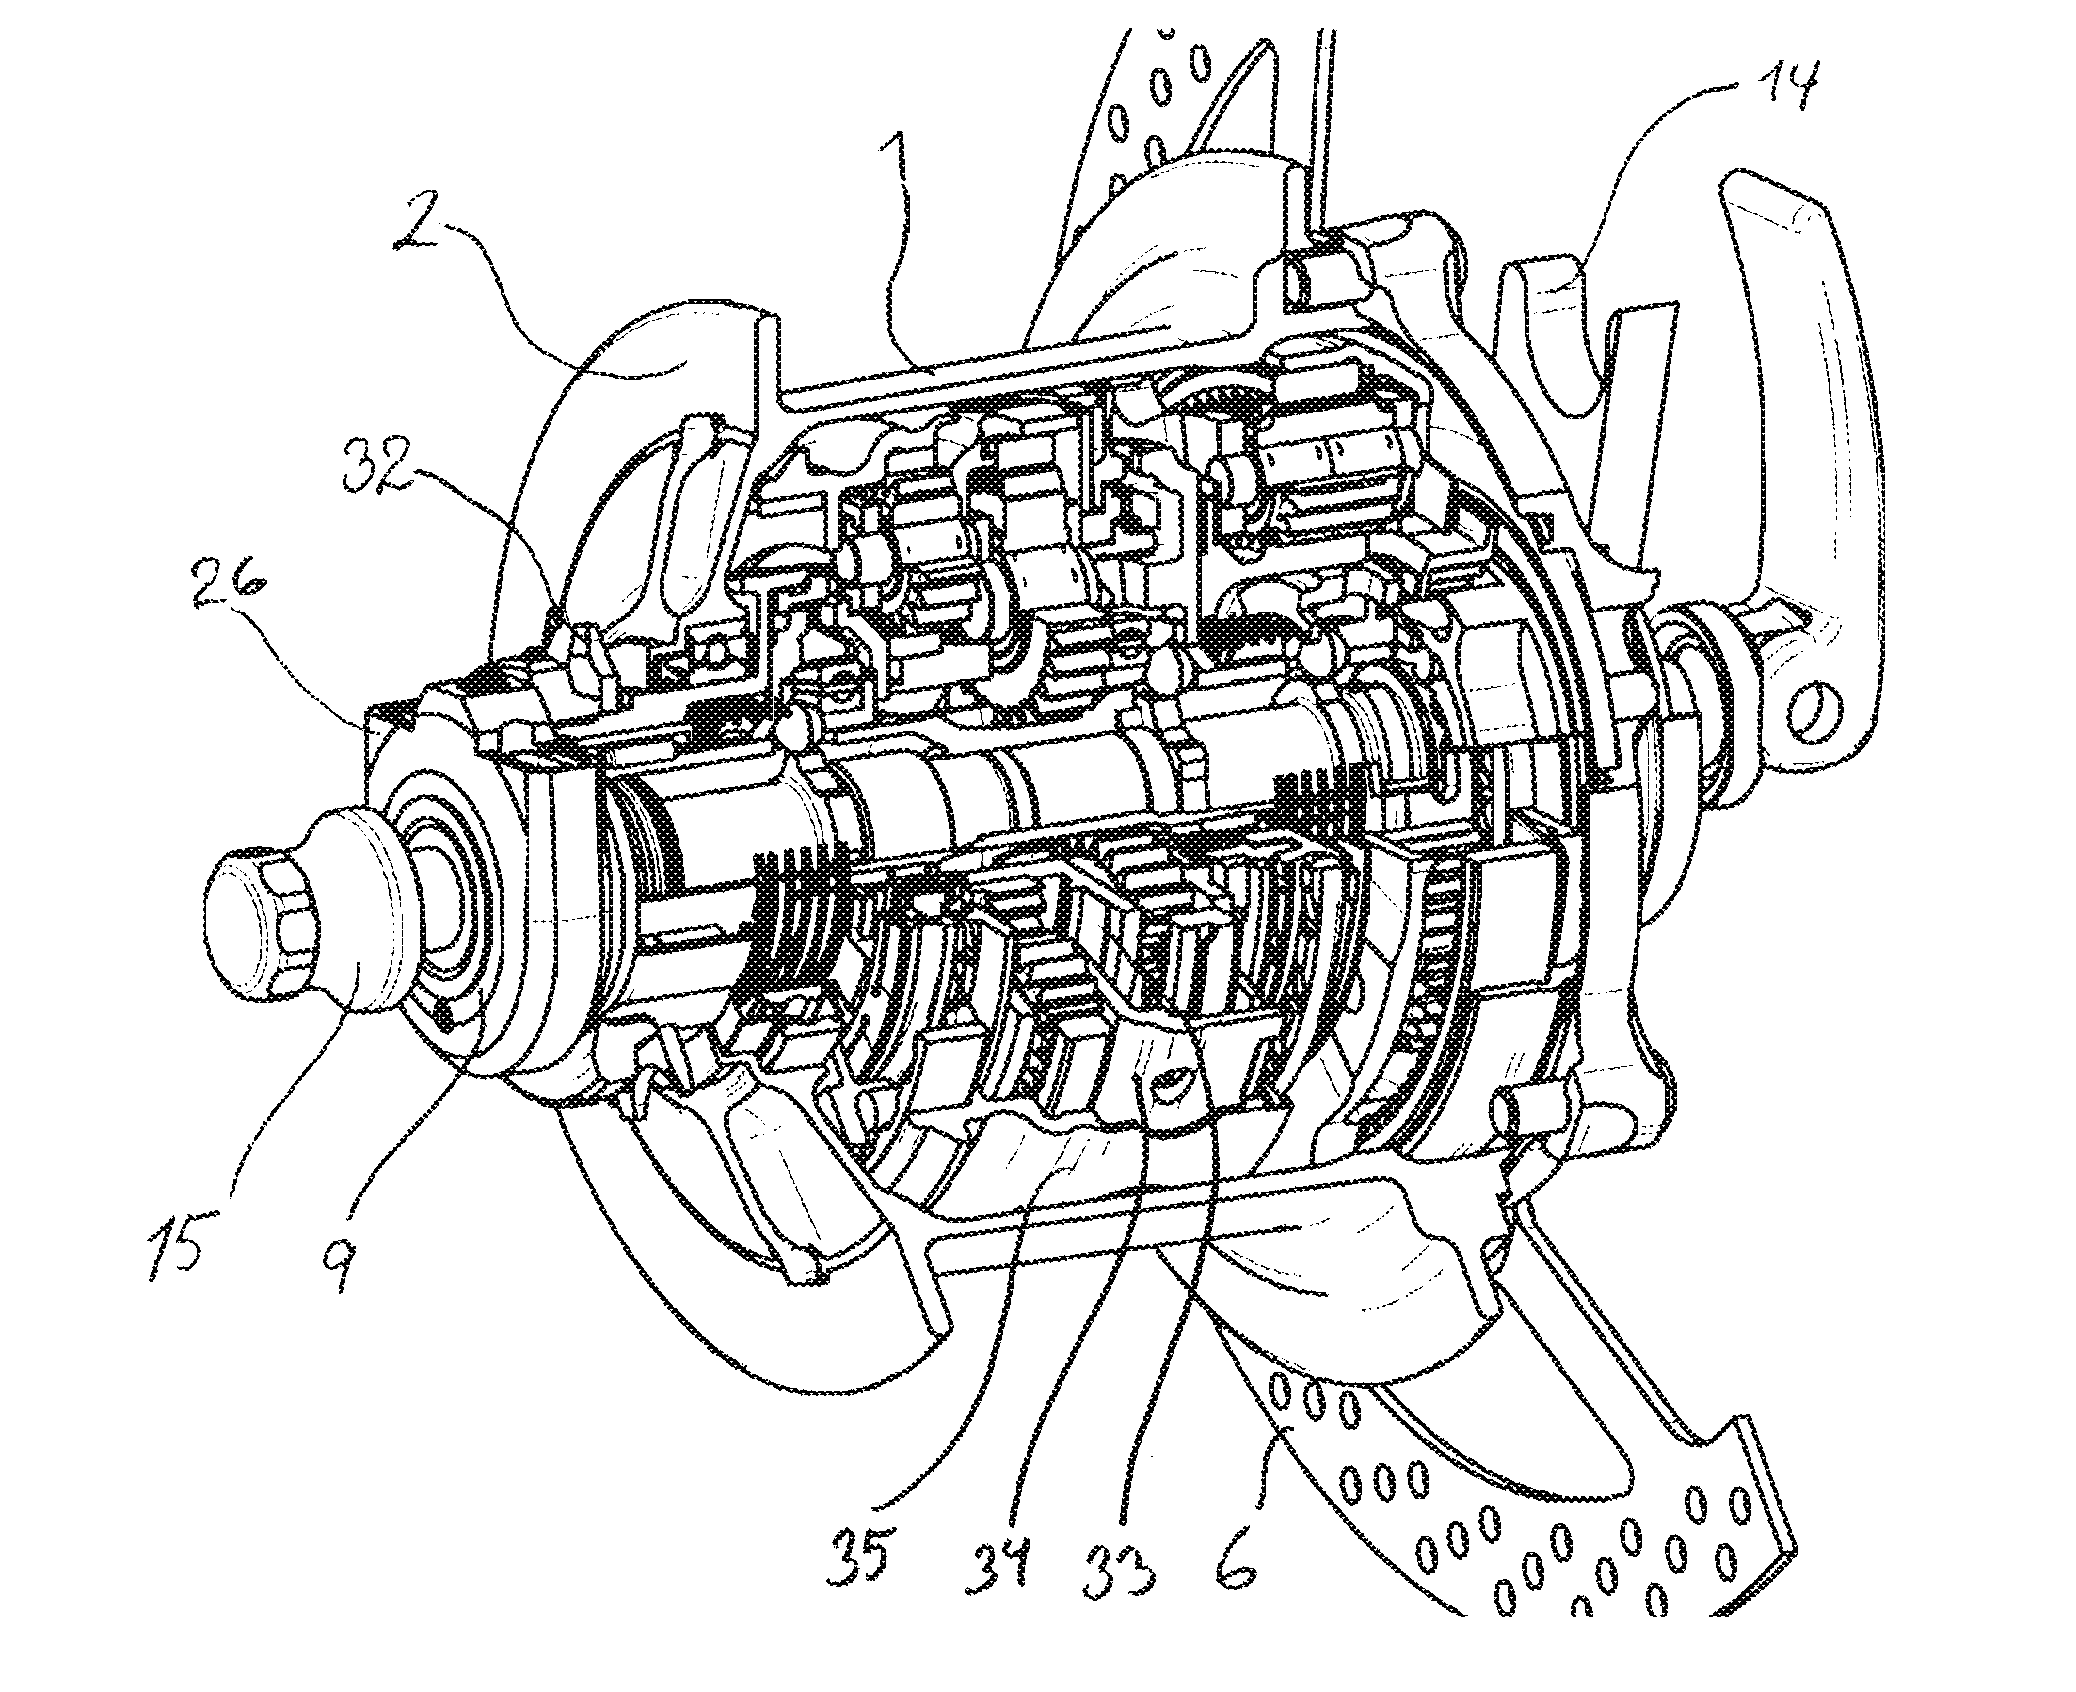 Multi-speed gear system